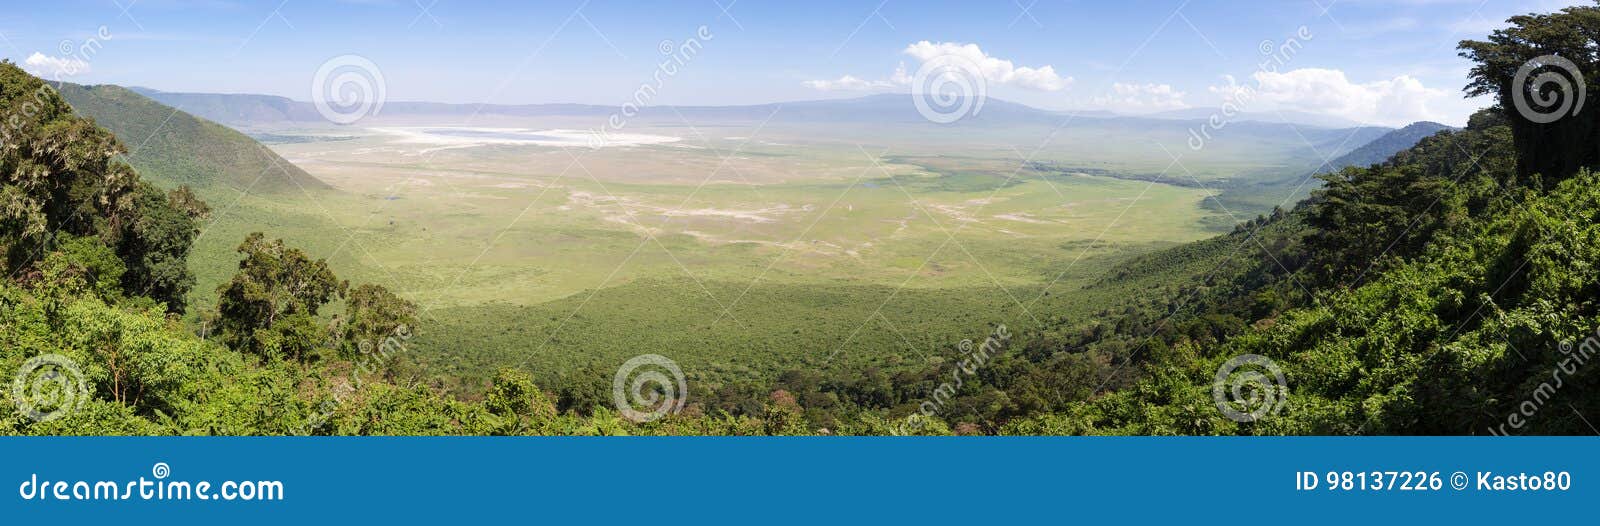 panoramiv view of volcanic crater of ngorongoro, tanzania, africa.